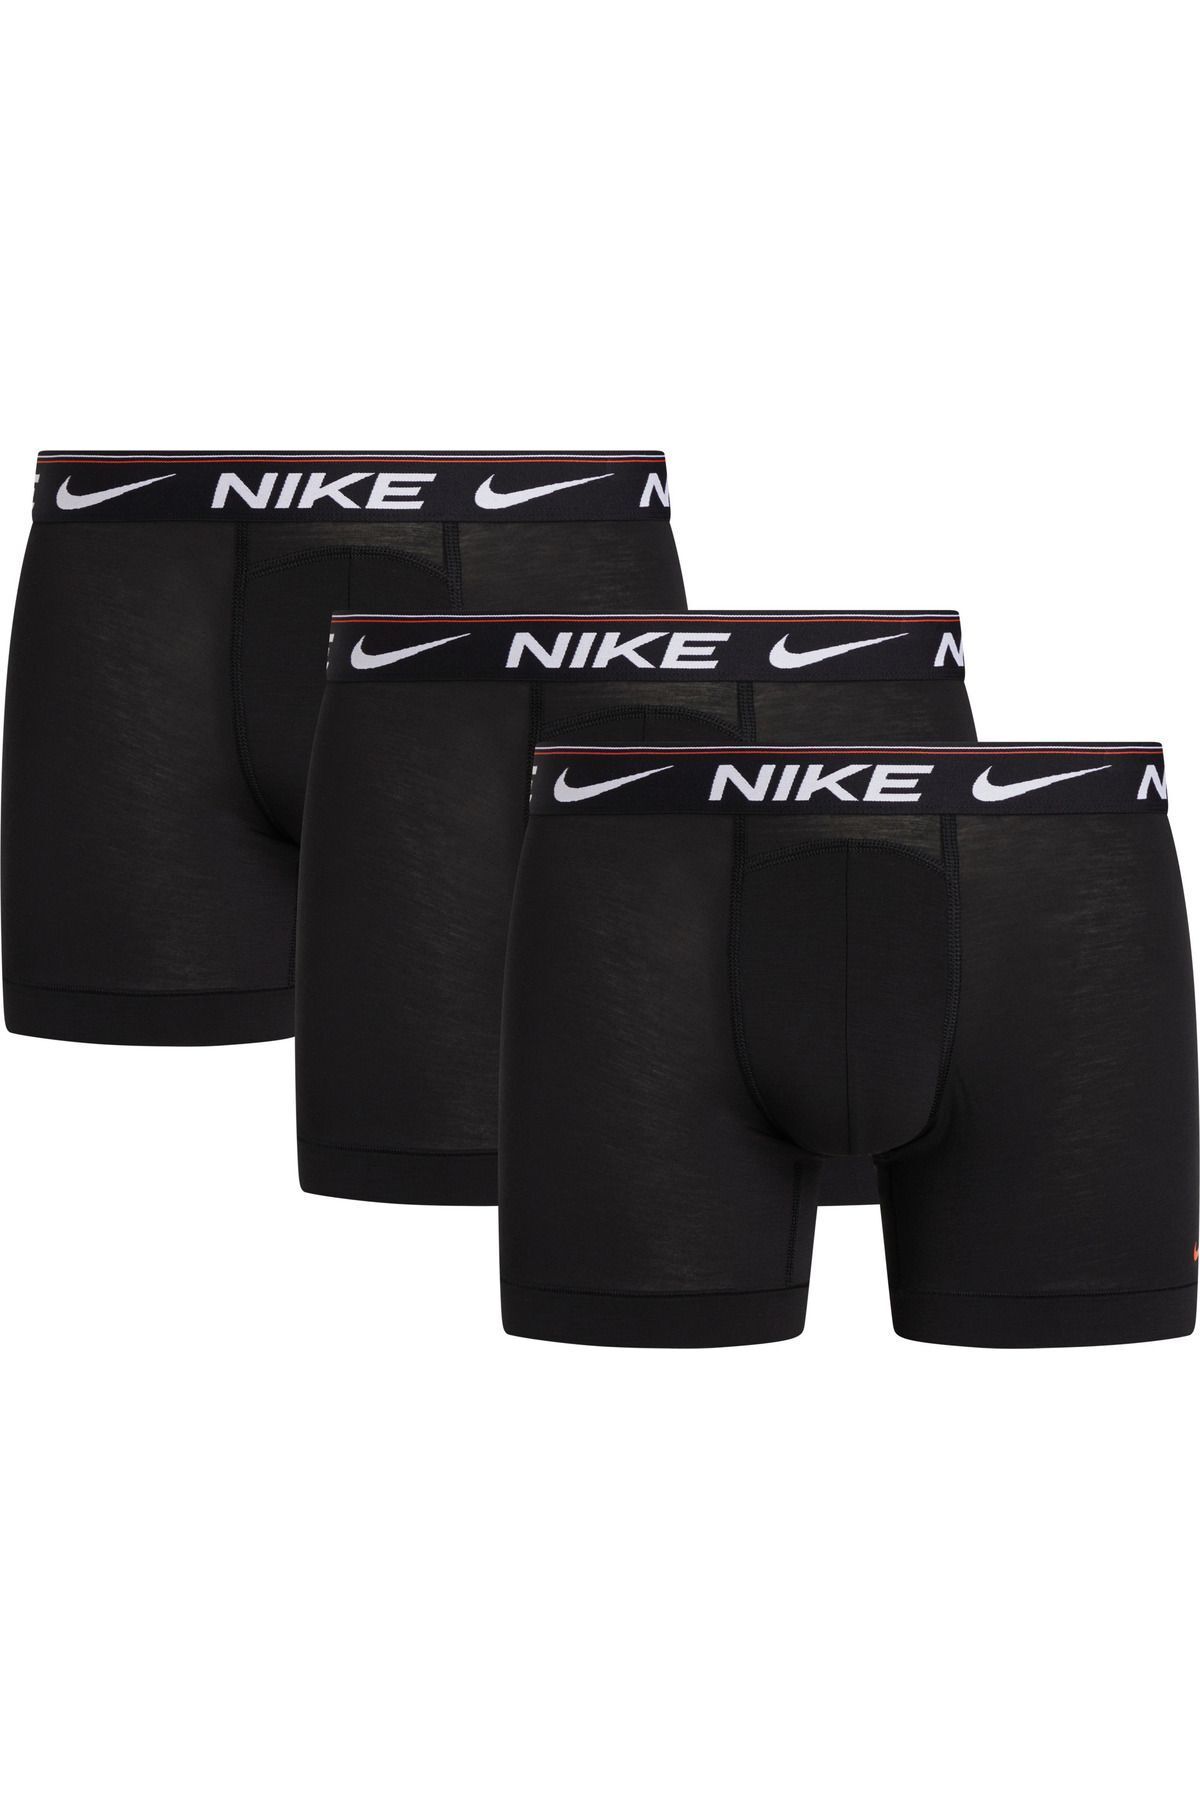 Nike Erkek Marka Logolu Elastik Bantlı Günlük Kullanıma Uygun Siyah Boxer 0000KE1256-KP3